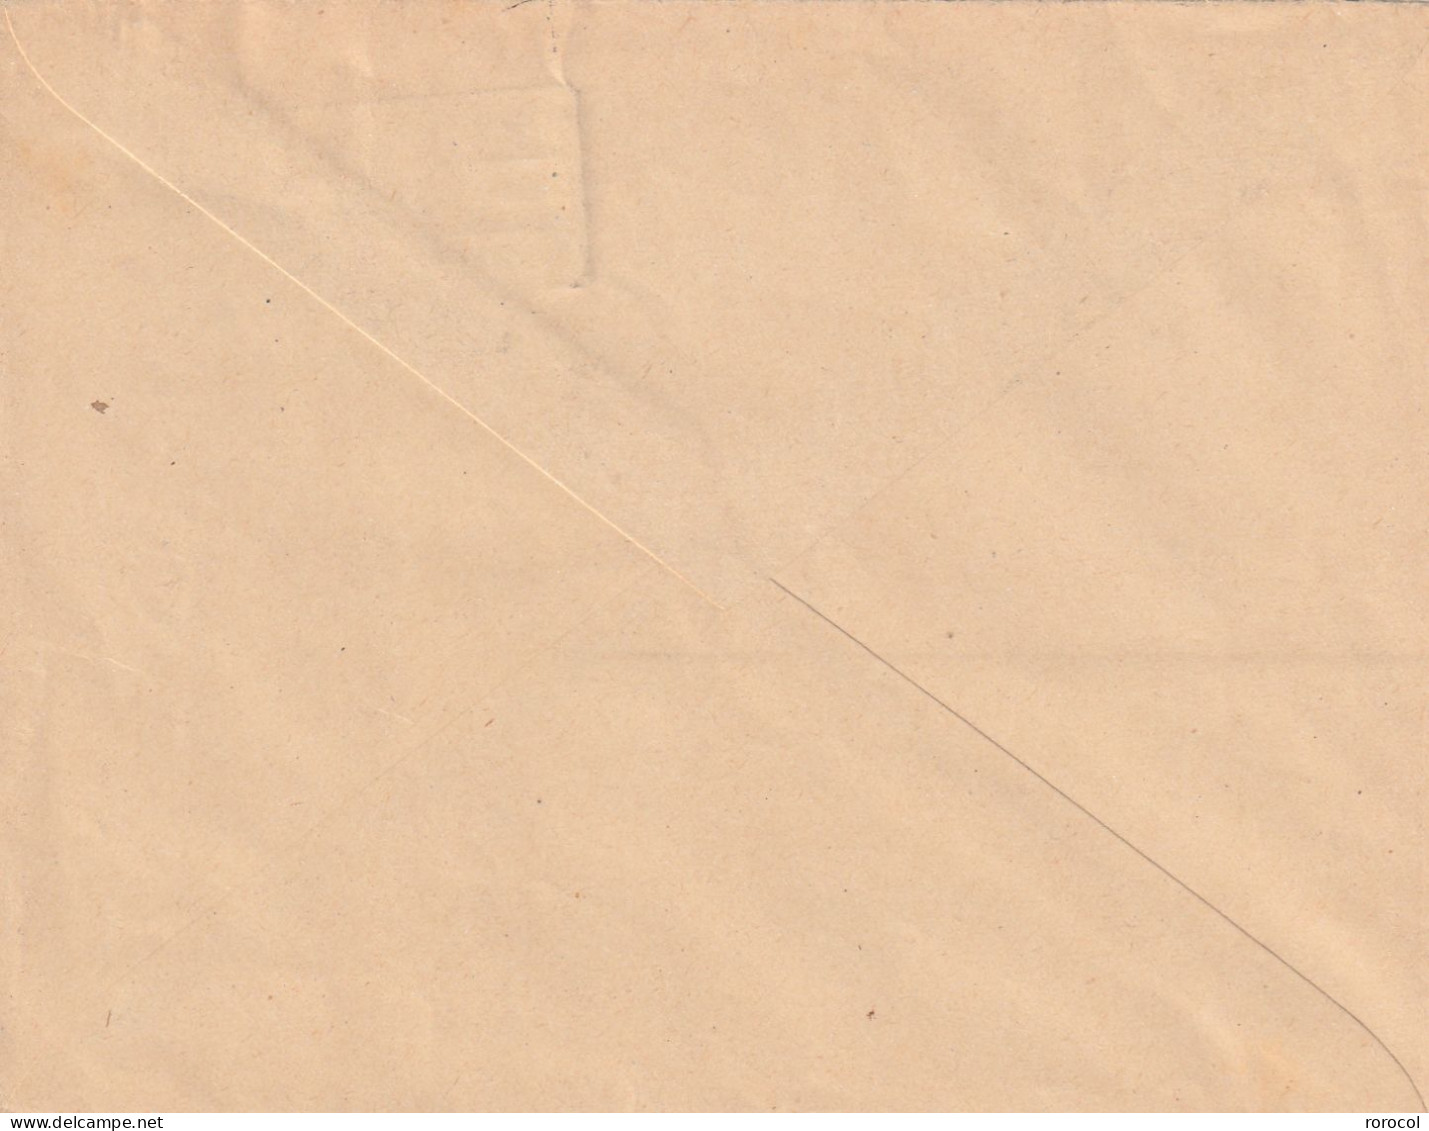 SPM Lettre 1926 " PP" USAGE LOCAL Utilisé Faute De Timbre Cote 90€ - Covers & Documents